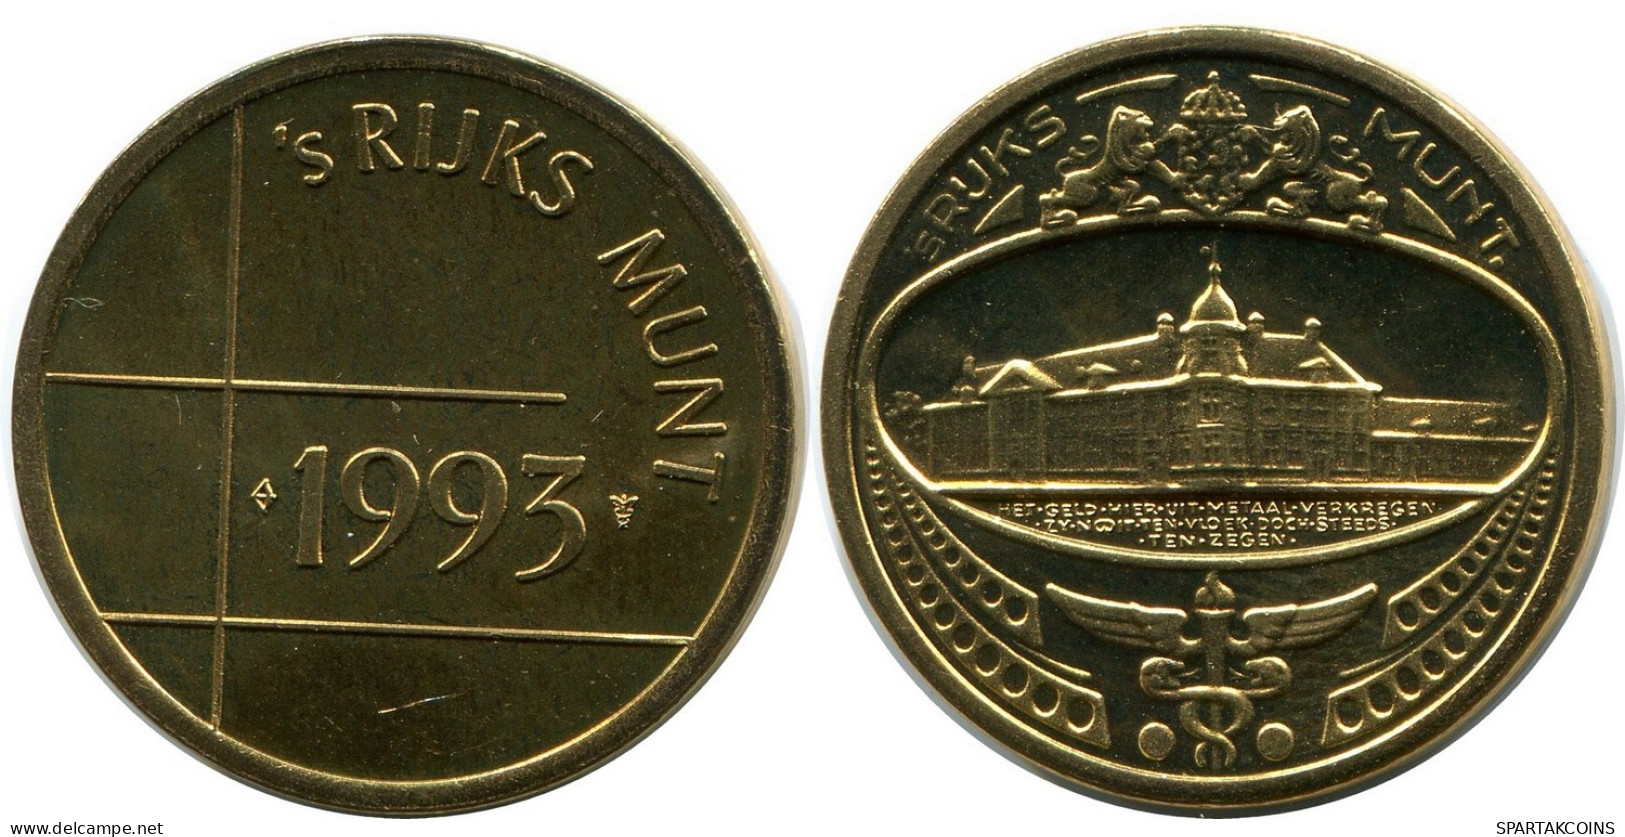 1993 ROYAL DUTCH MINT SET TOKEN NÉERLANDAIS NETHERLANDS MINT (From BU Mint Set) #AH032.F - Jahressets & Polierte Platten